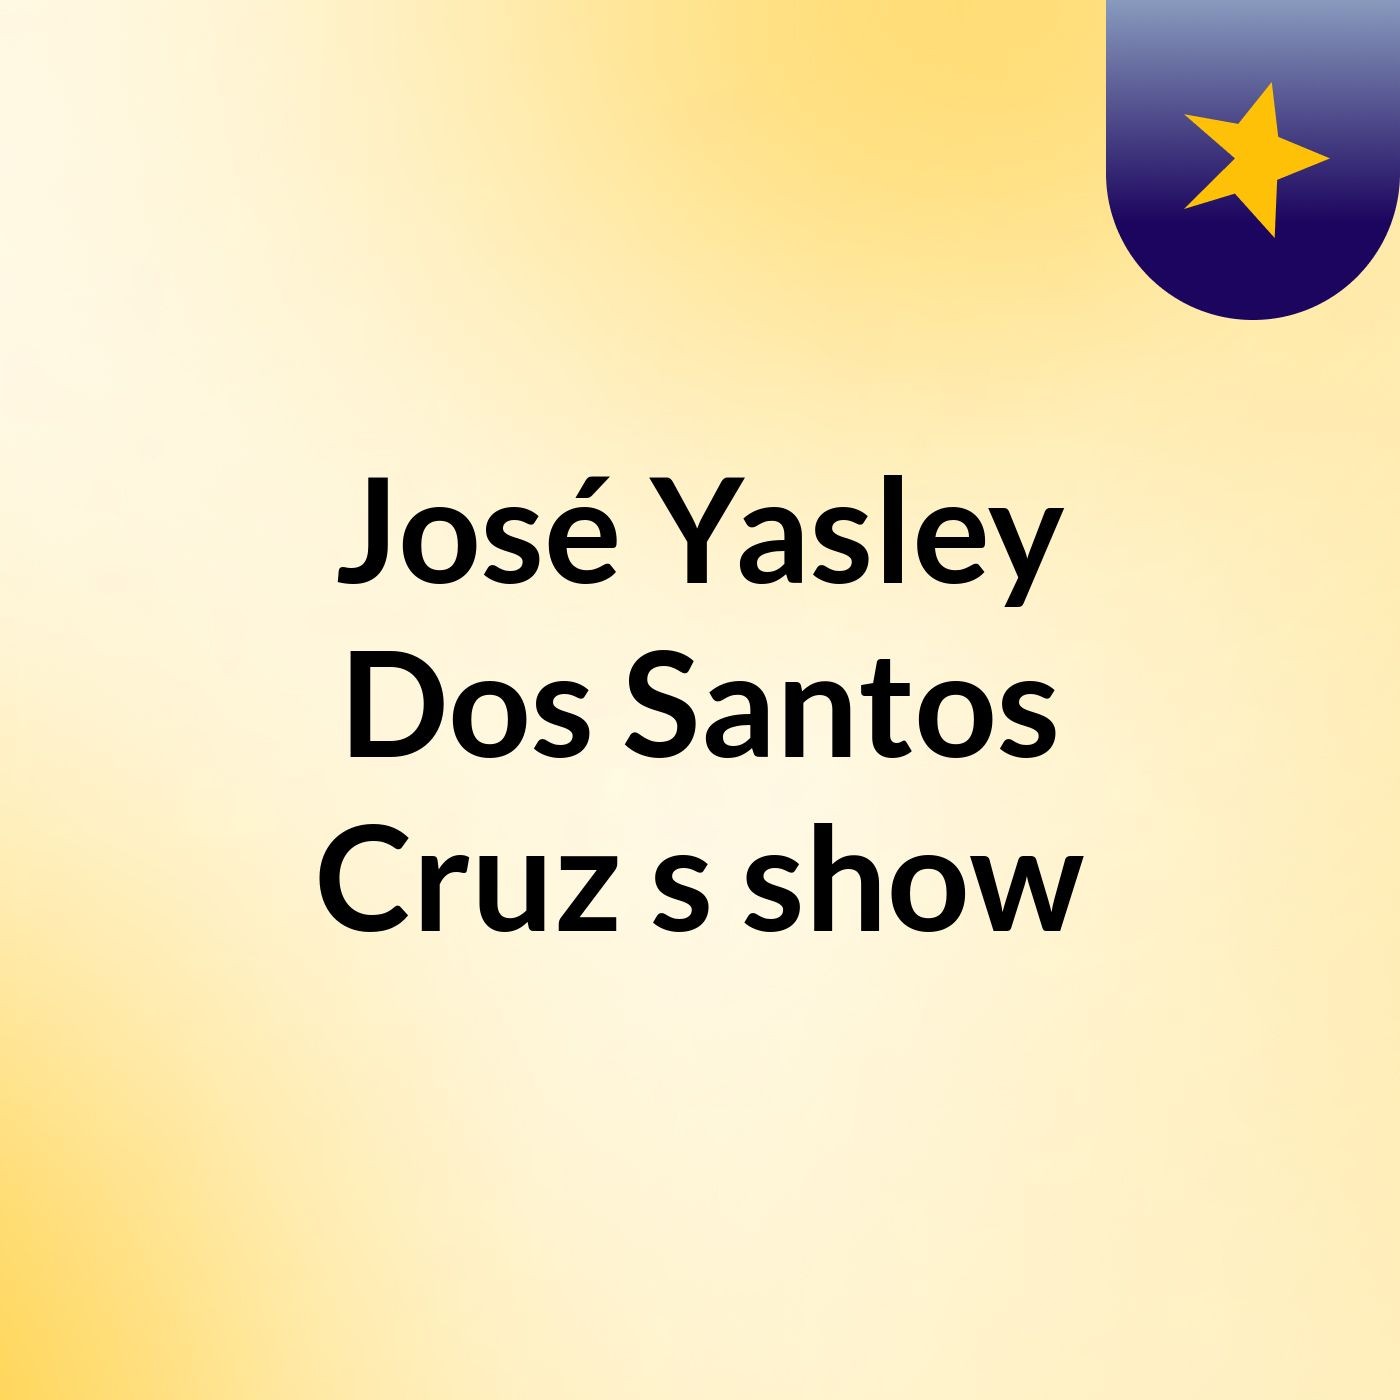 José Yasley Dos Santos Cruz's show